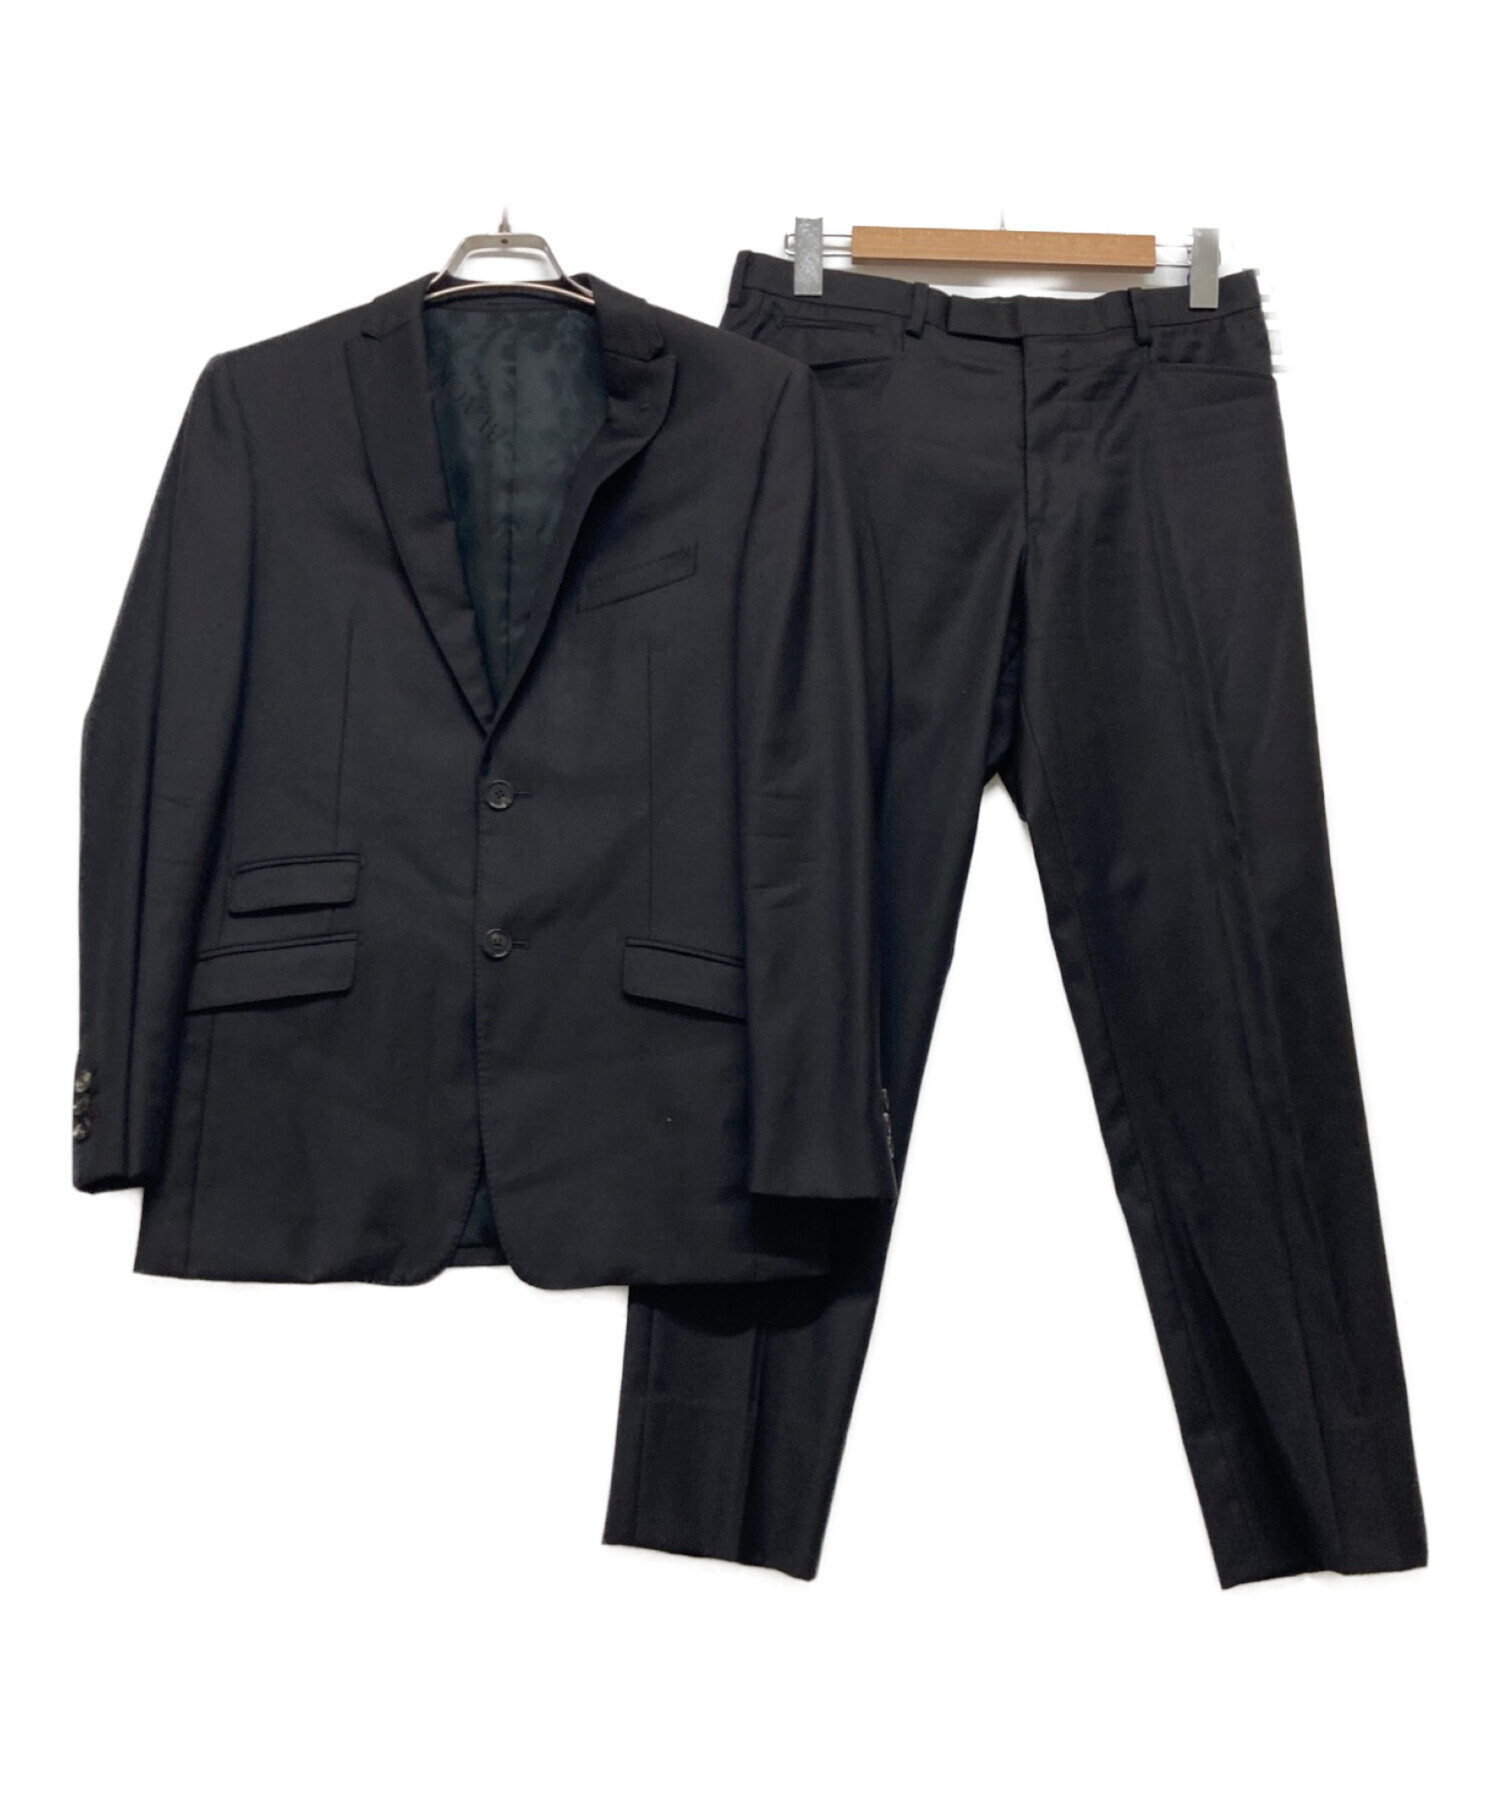 LANVIN COLLECTION】セットアップスーツ 38サイズ ブラック - スカート